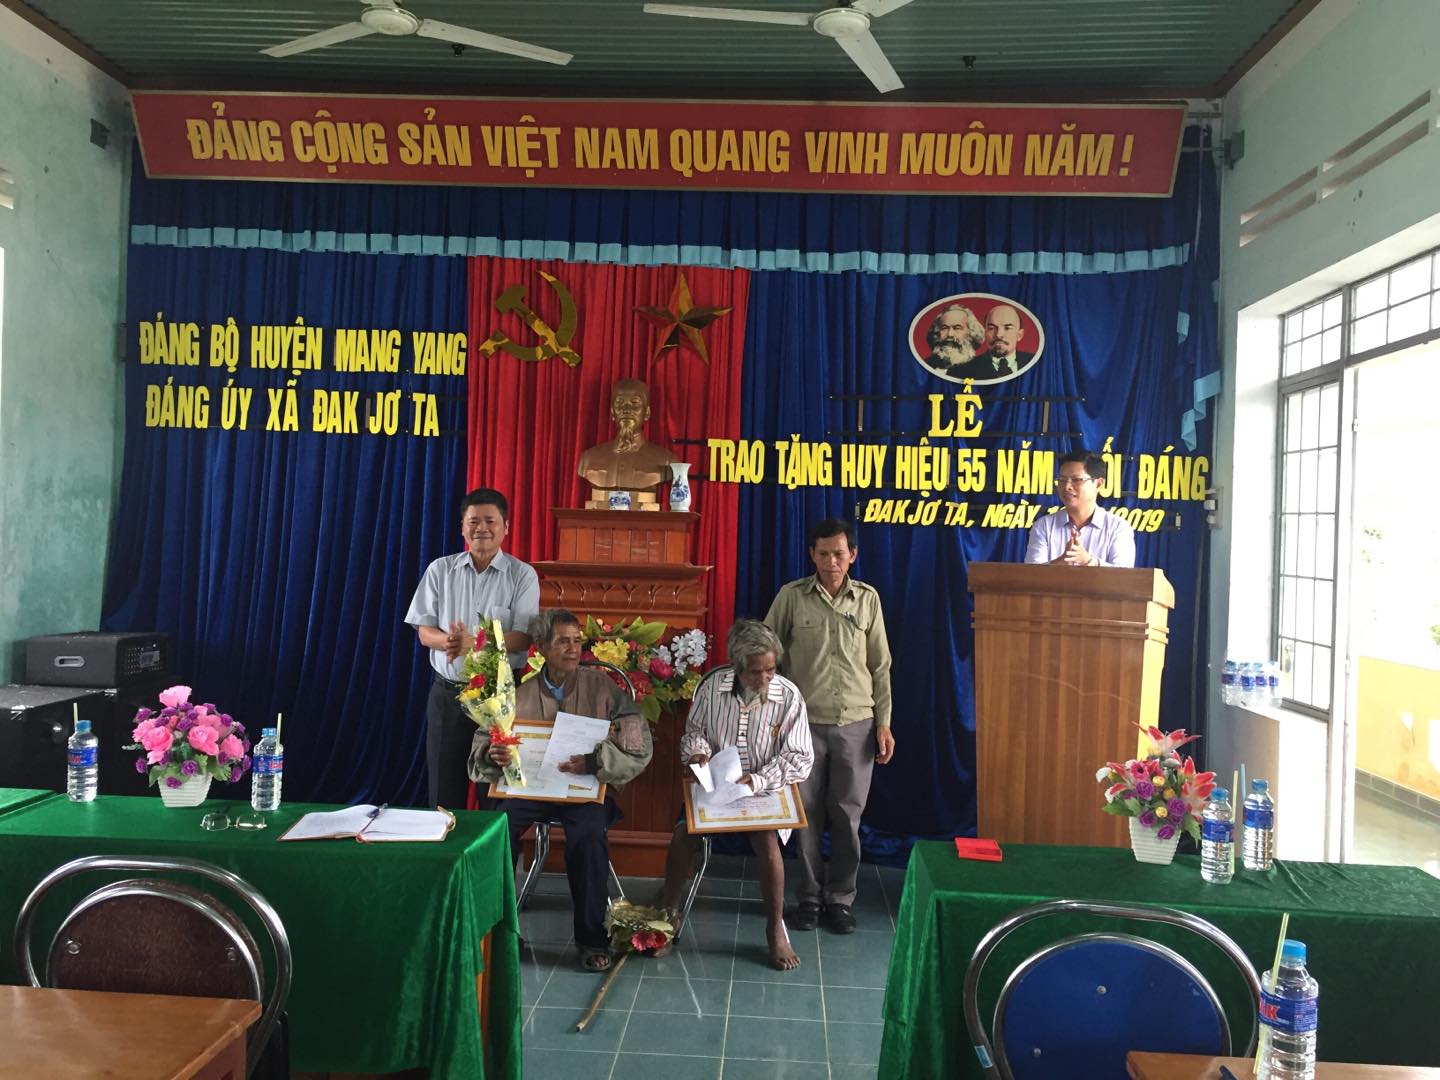 Đảng bộ xã Đak Jơ Ta đã tổ chức Lễ trao tặng huy hiệu 55 tuổi Đảng